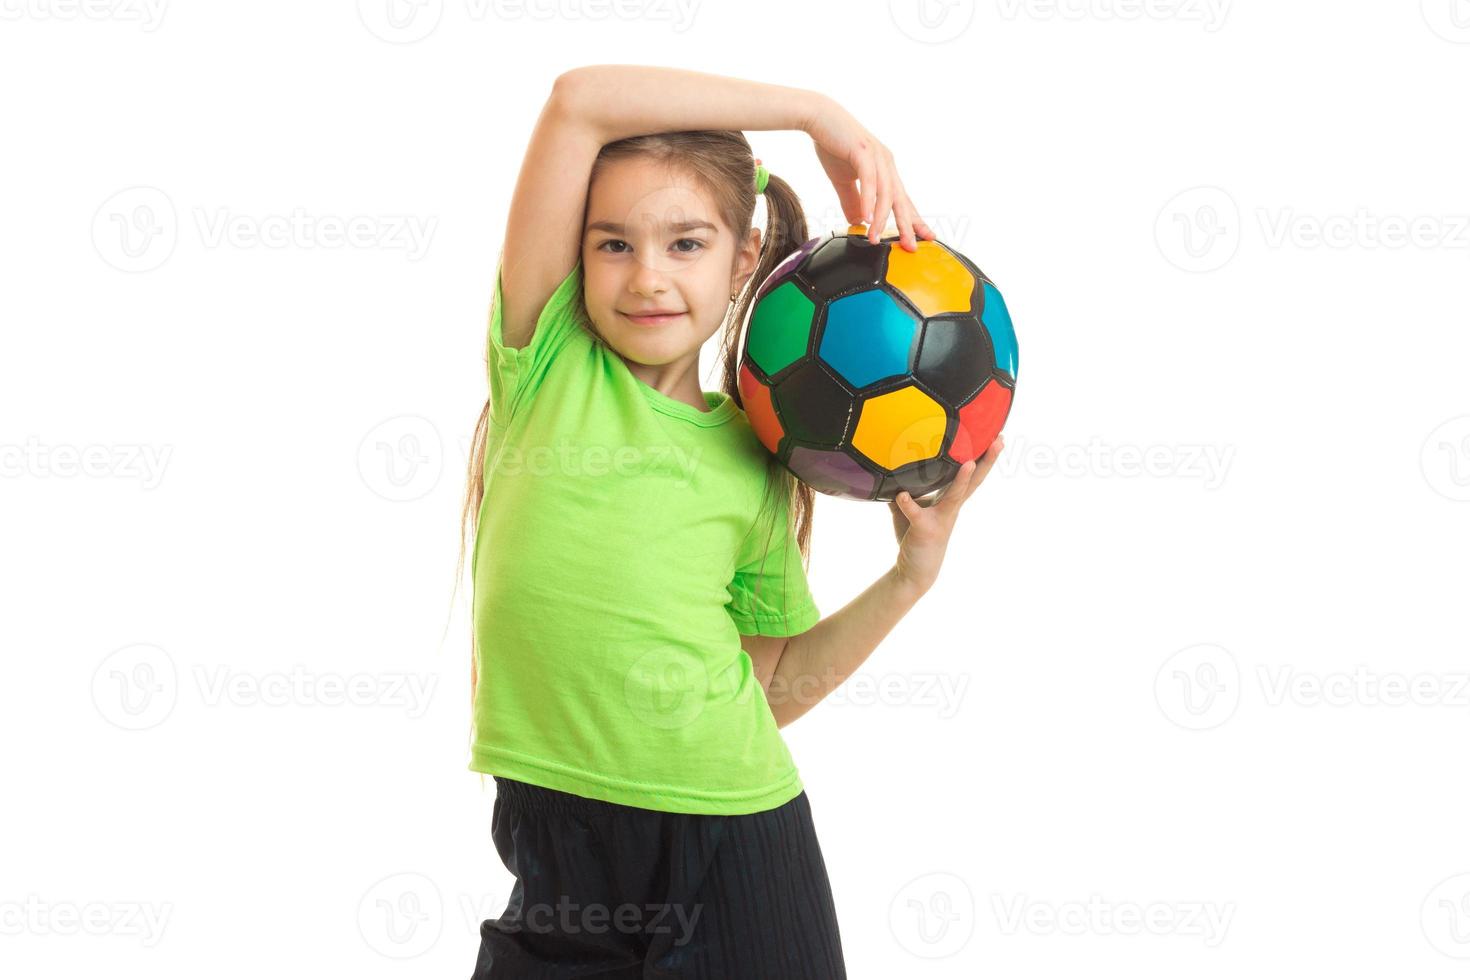 menina bonitinha com uma bola de futebol nas mãos foto